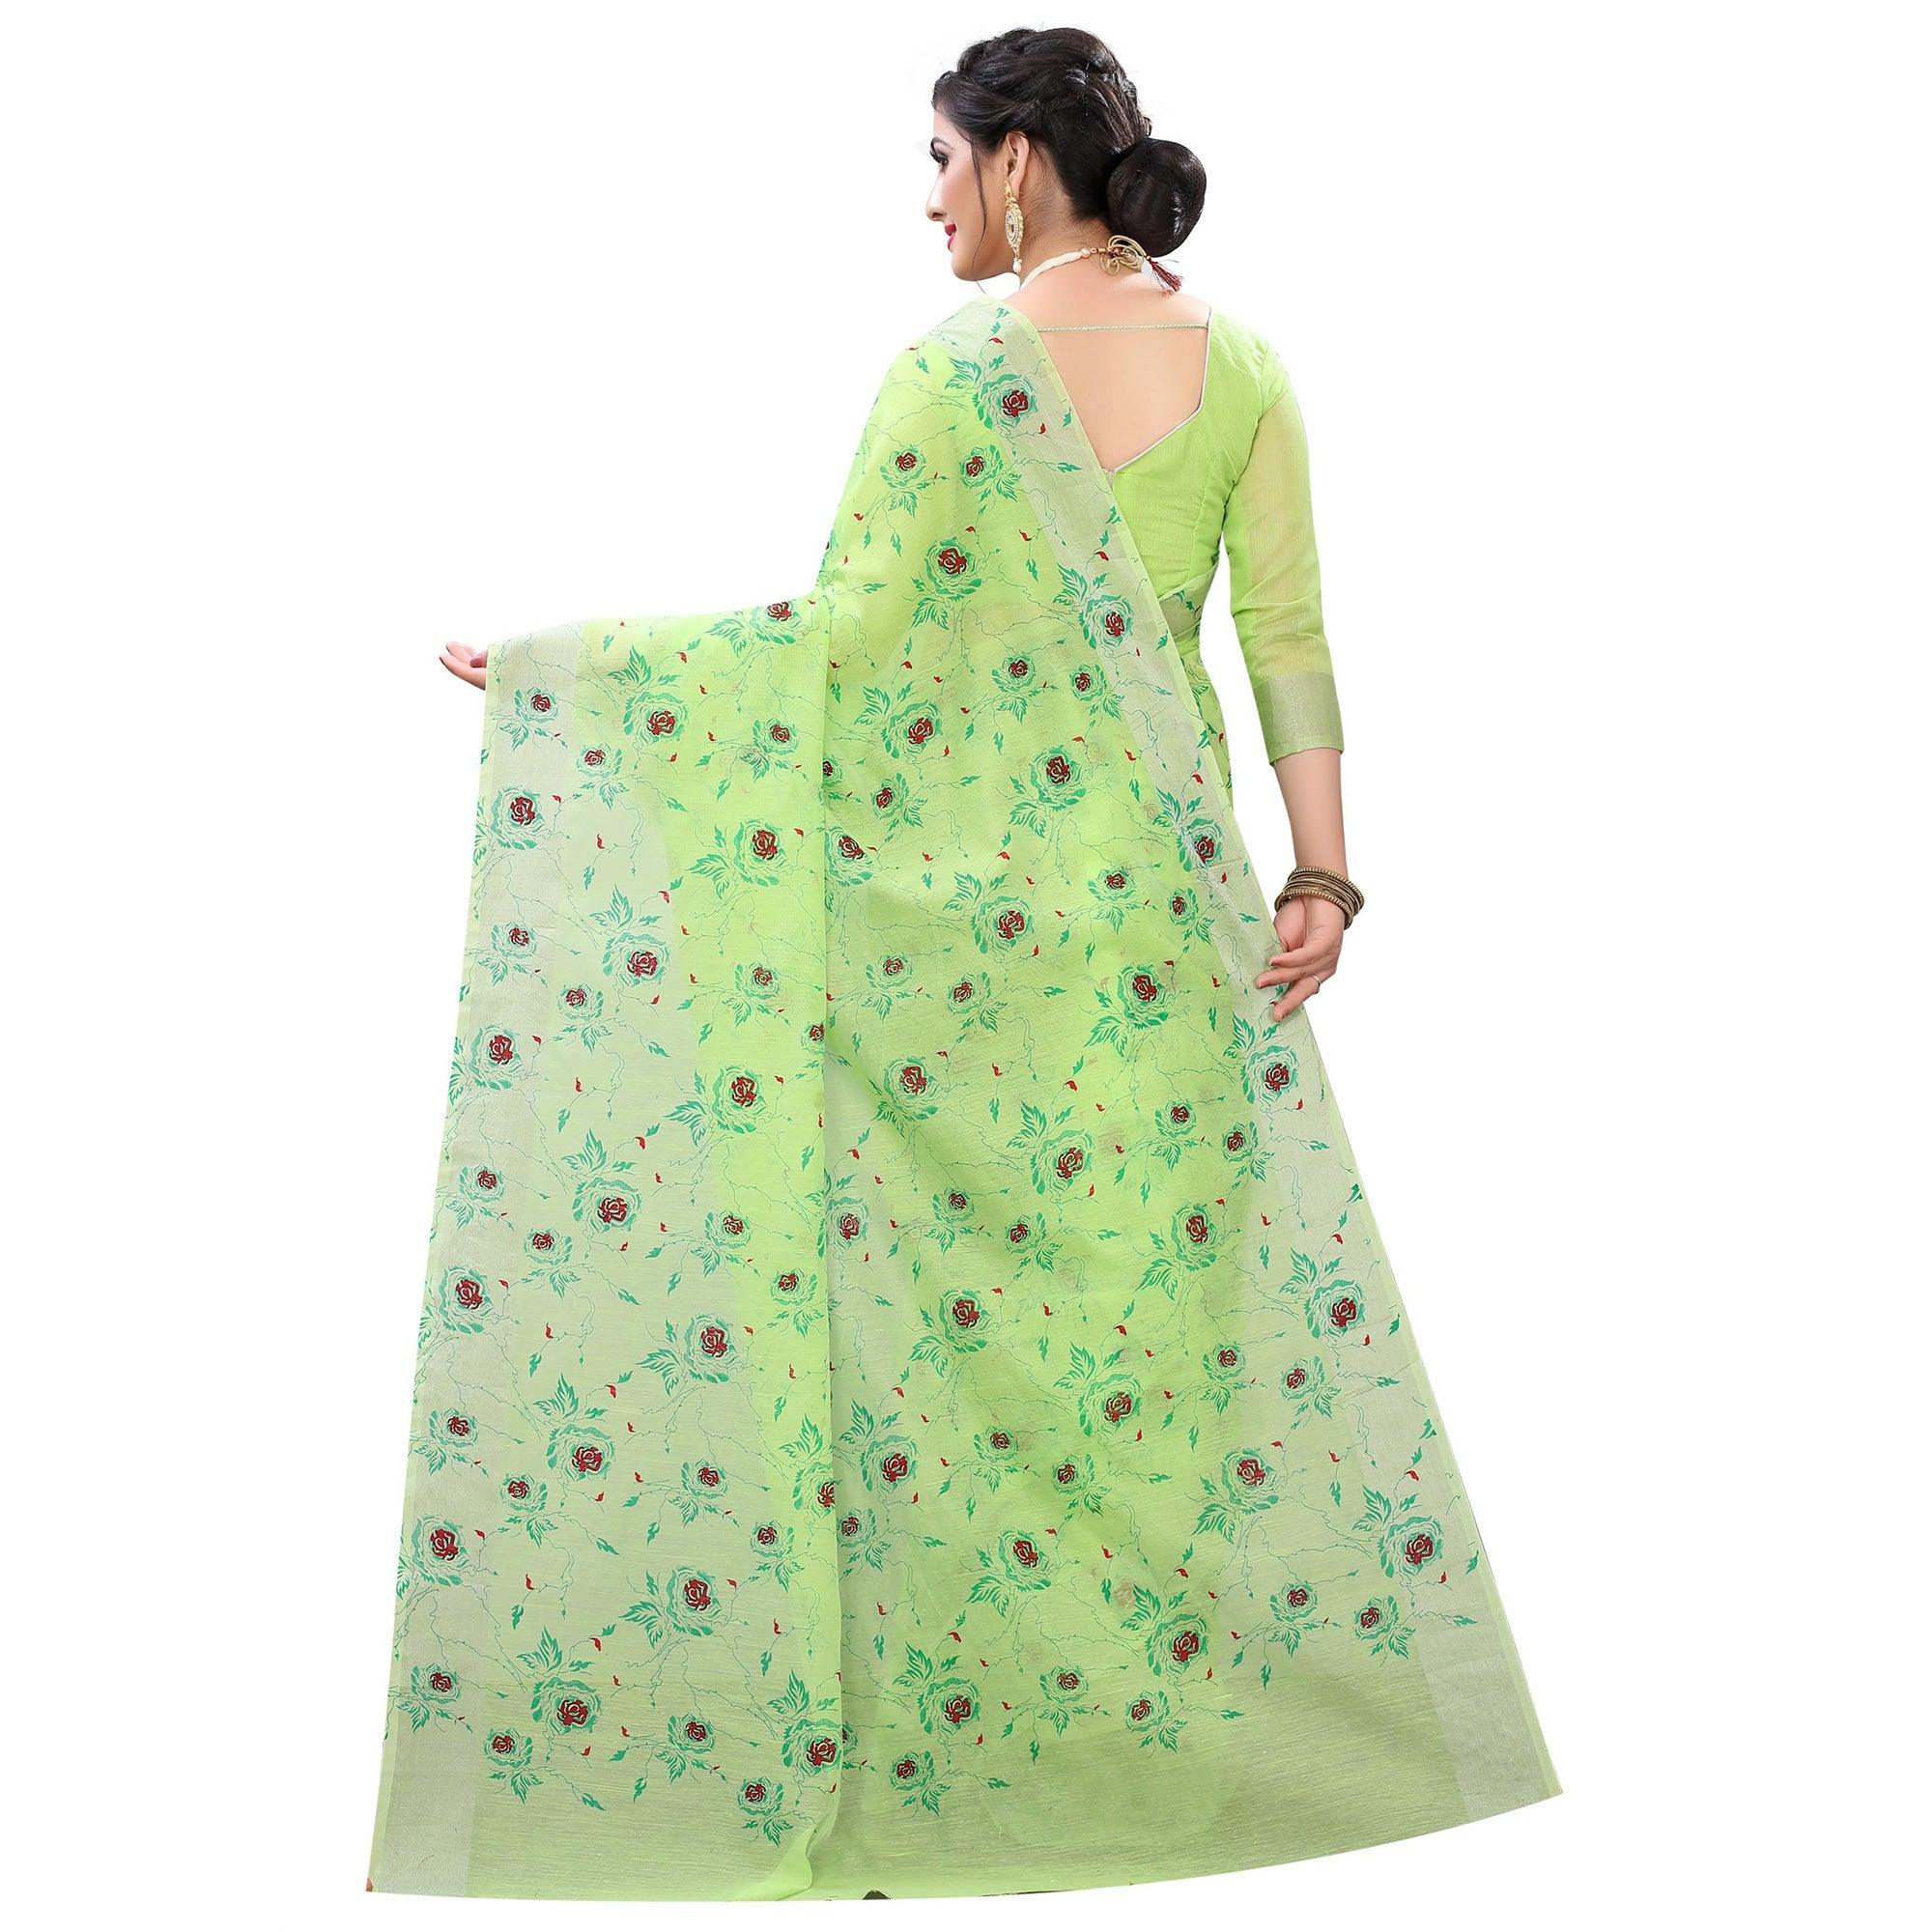 Pleasant Green Colored Casual Wear Printed Cotton Linen Saree - Peachmode